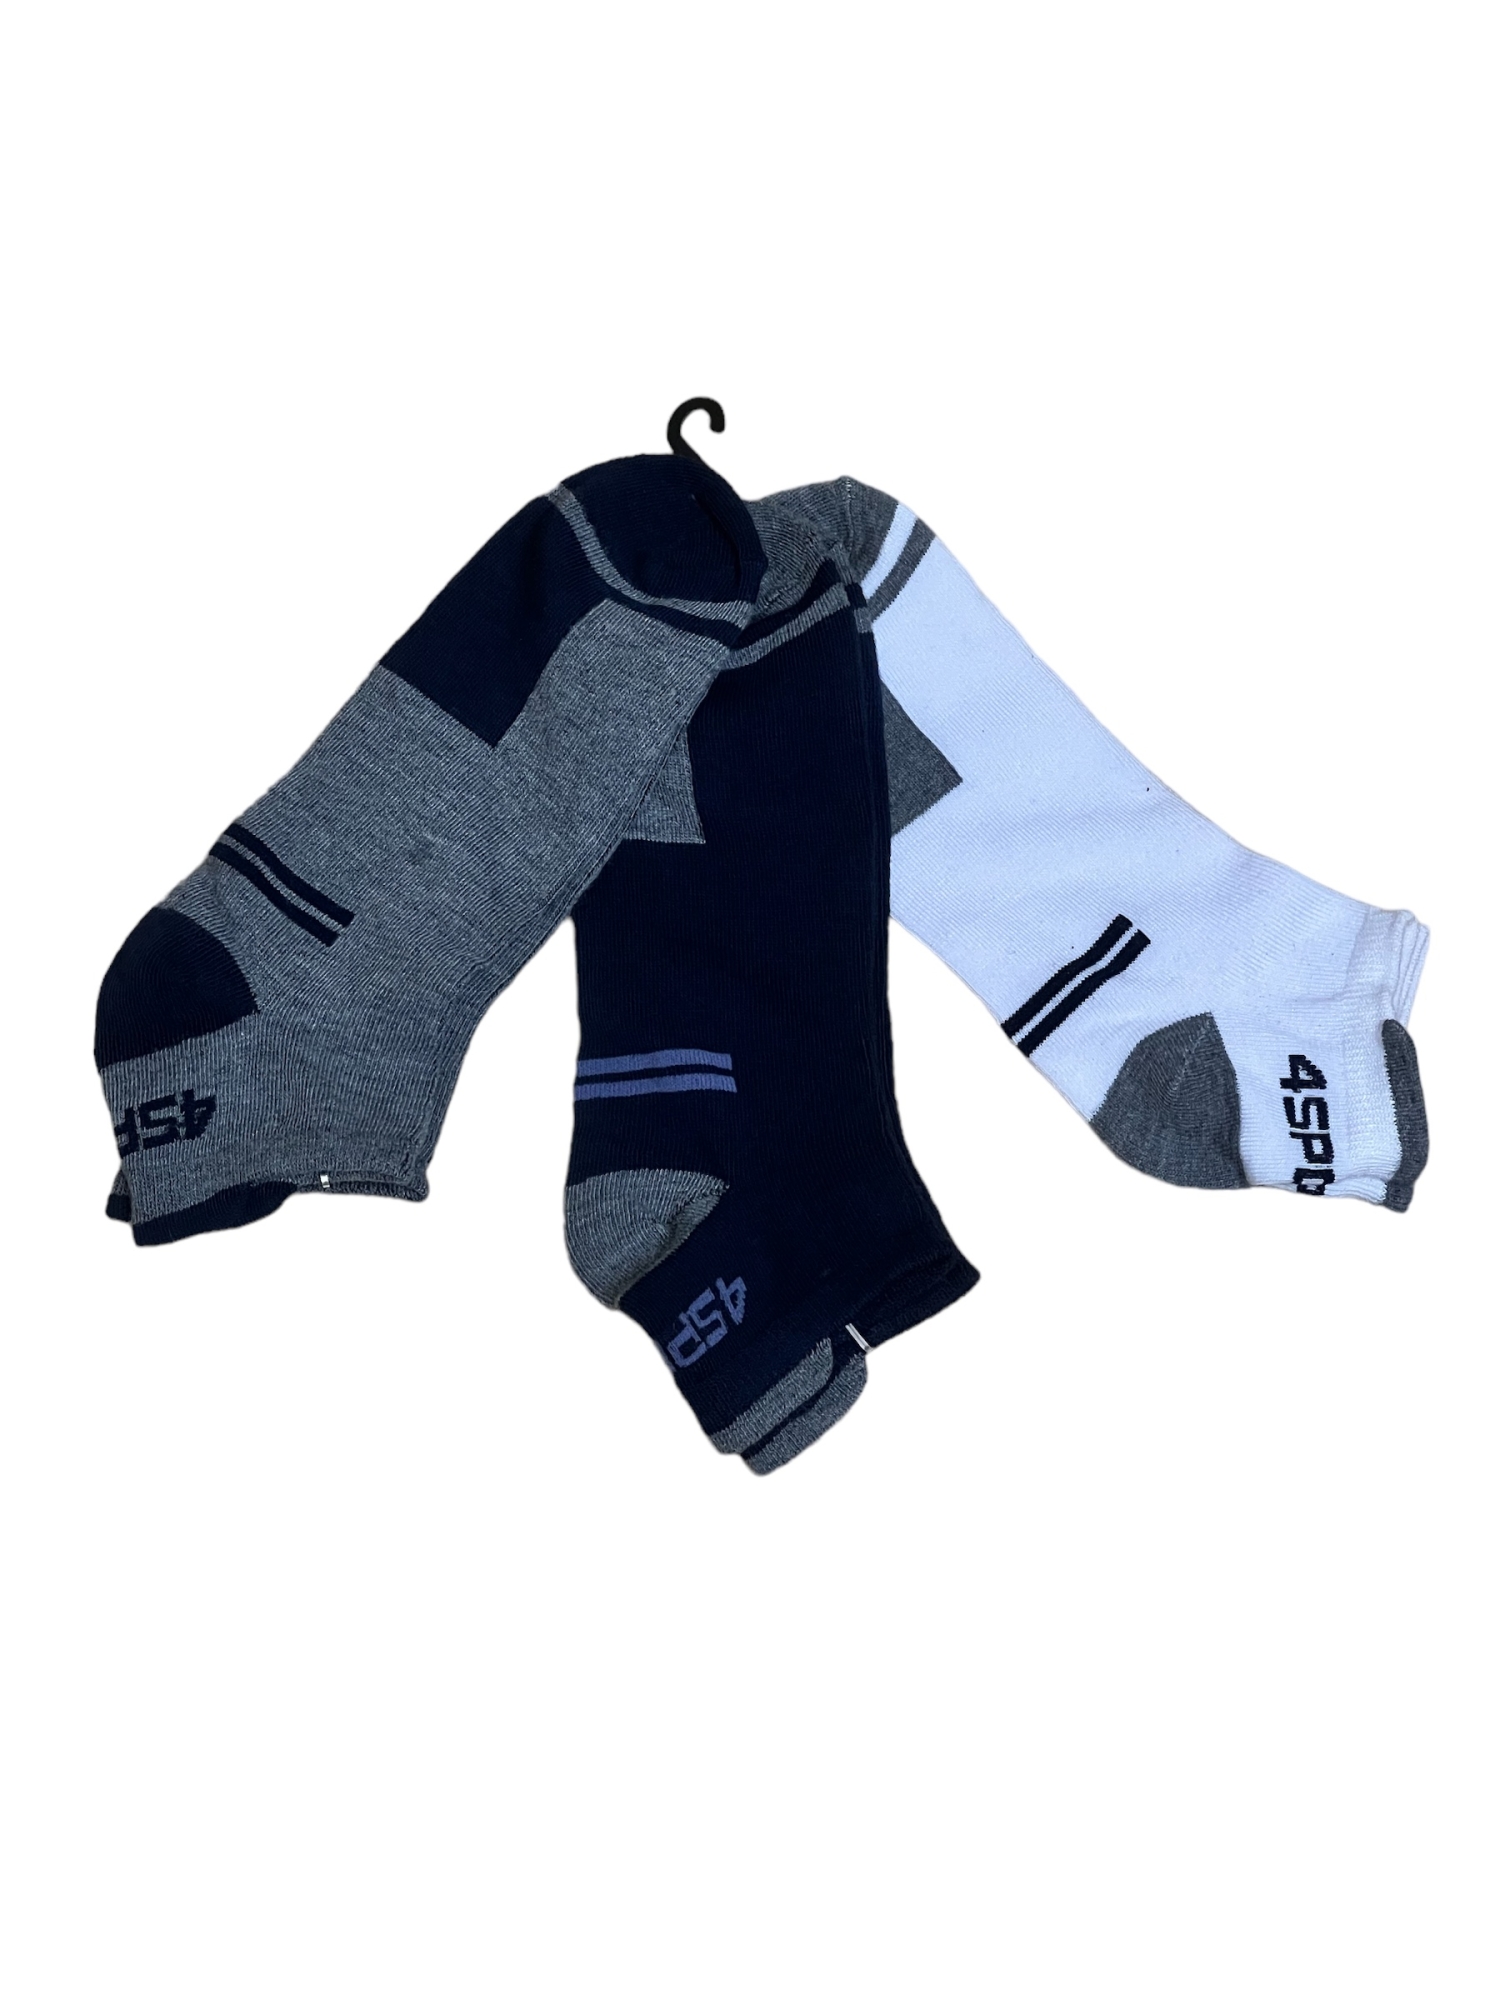 Мужские носки “pesail sport” 3 пары в упаковке